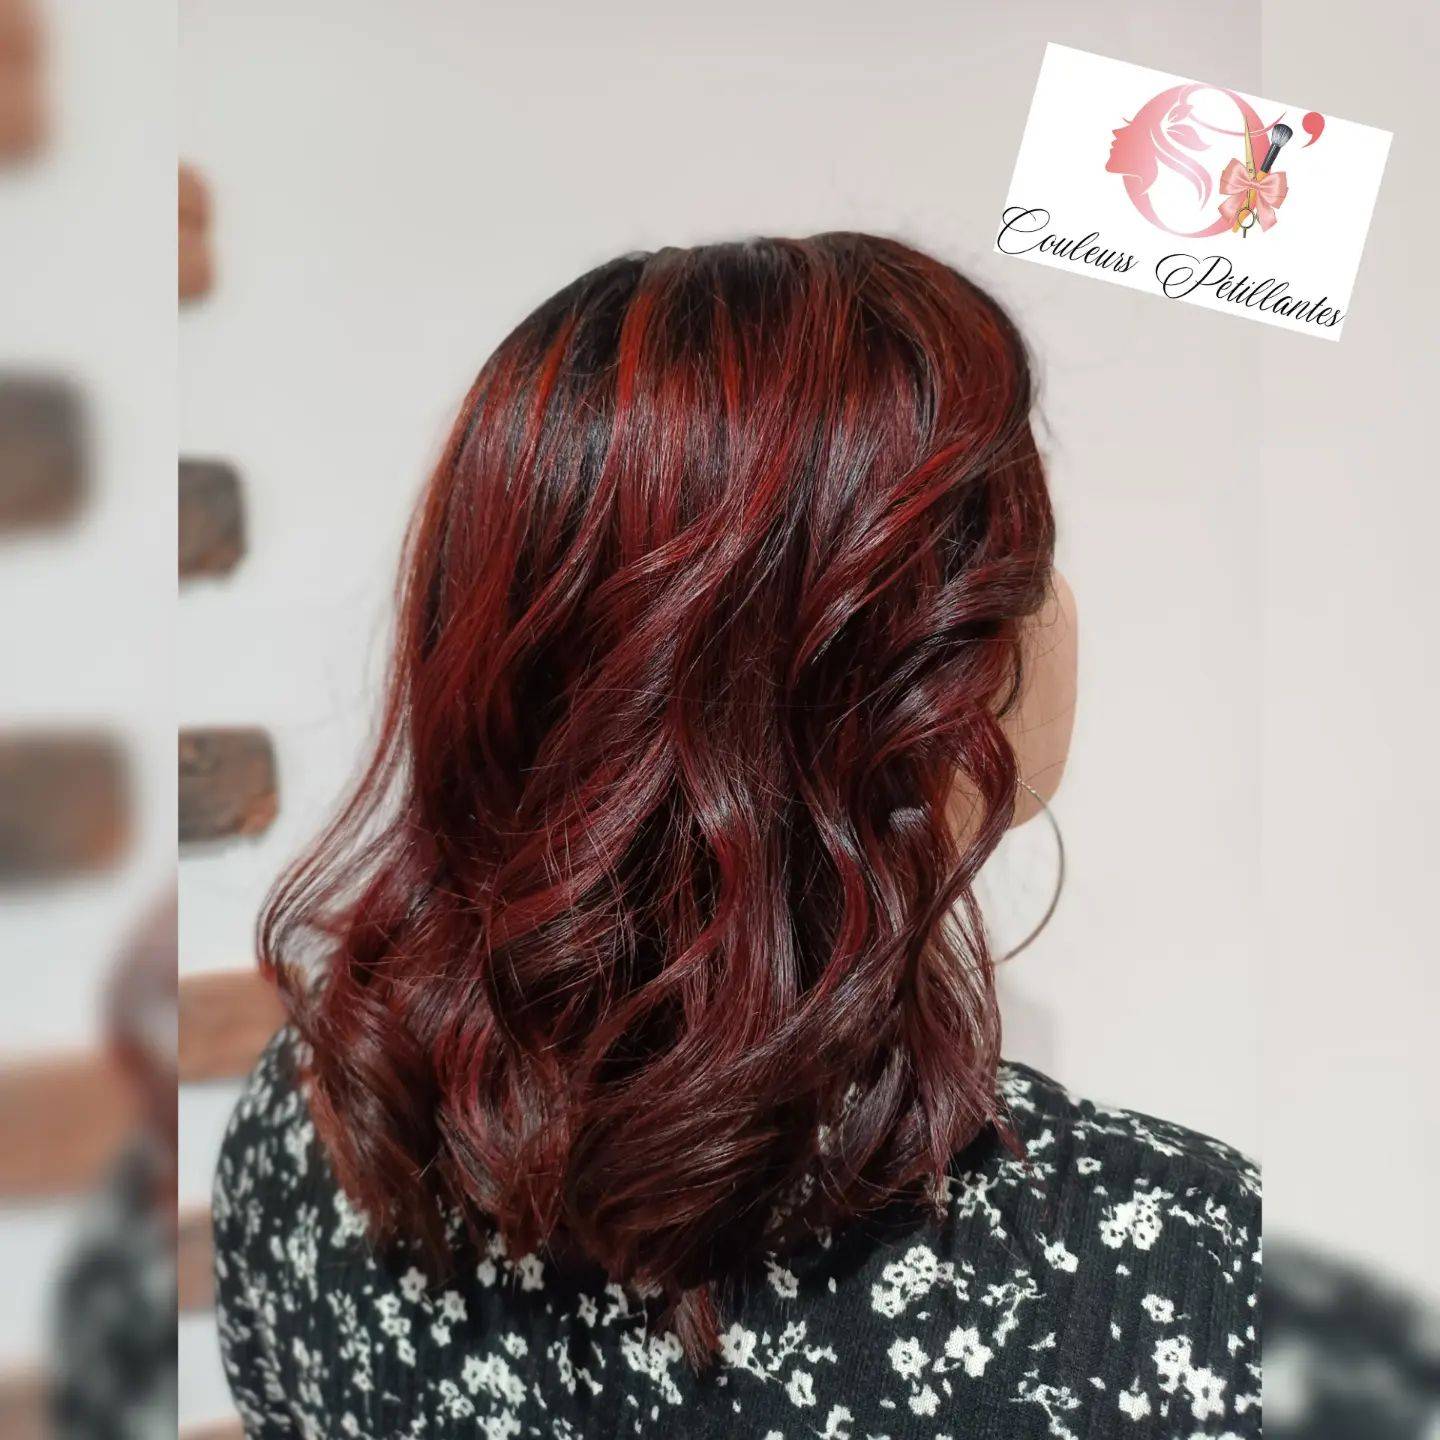 Burgundy hair color 364 burgundy hair color | burgundy hair color for women | burgundy hair color highlights Burgundy Hair Color